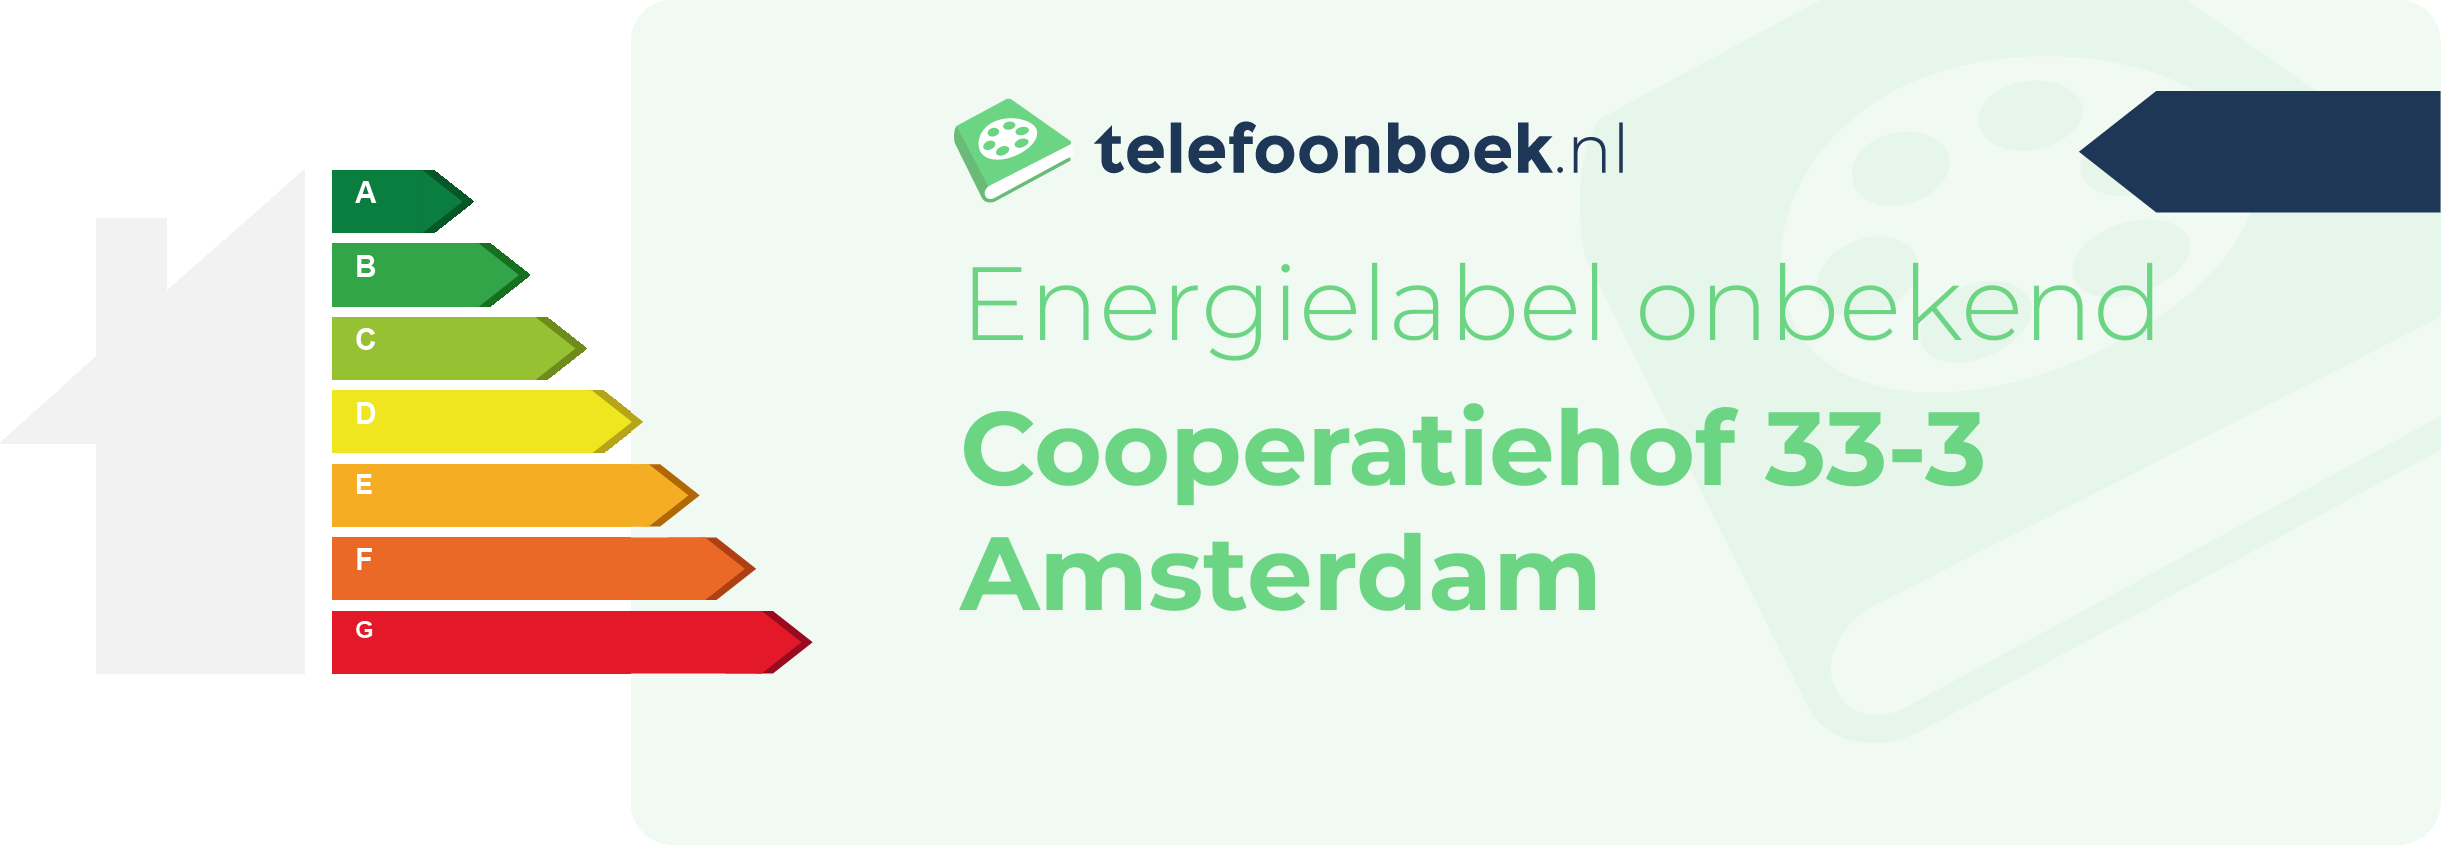 Energielabel Cooperatiehof 33-3 Amsterdam